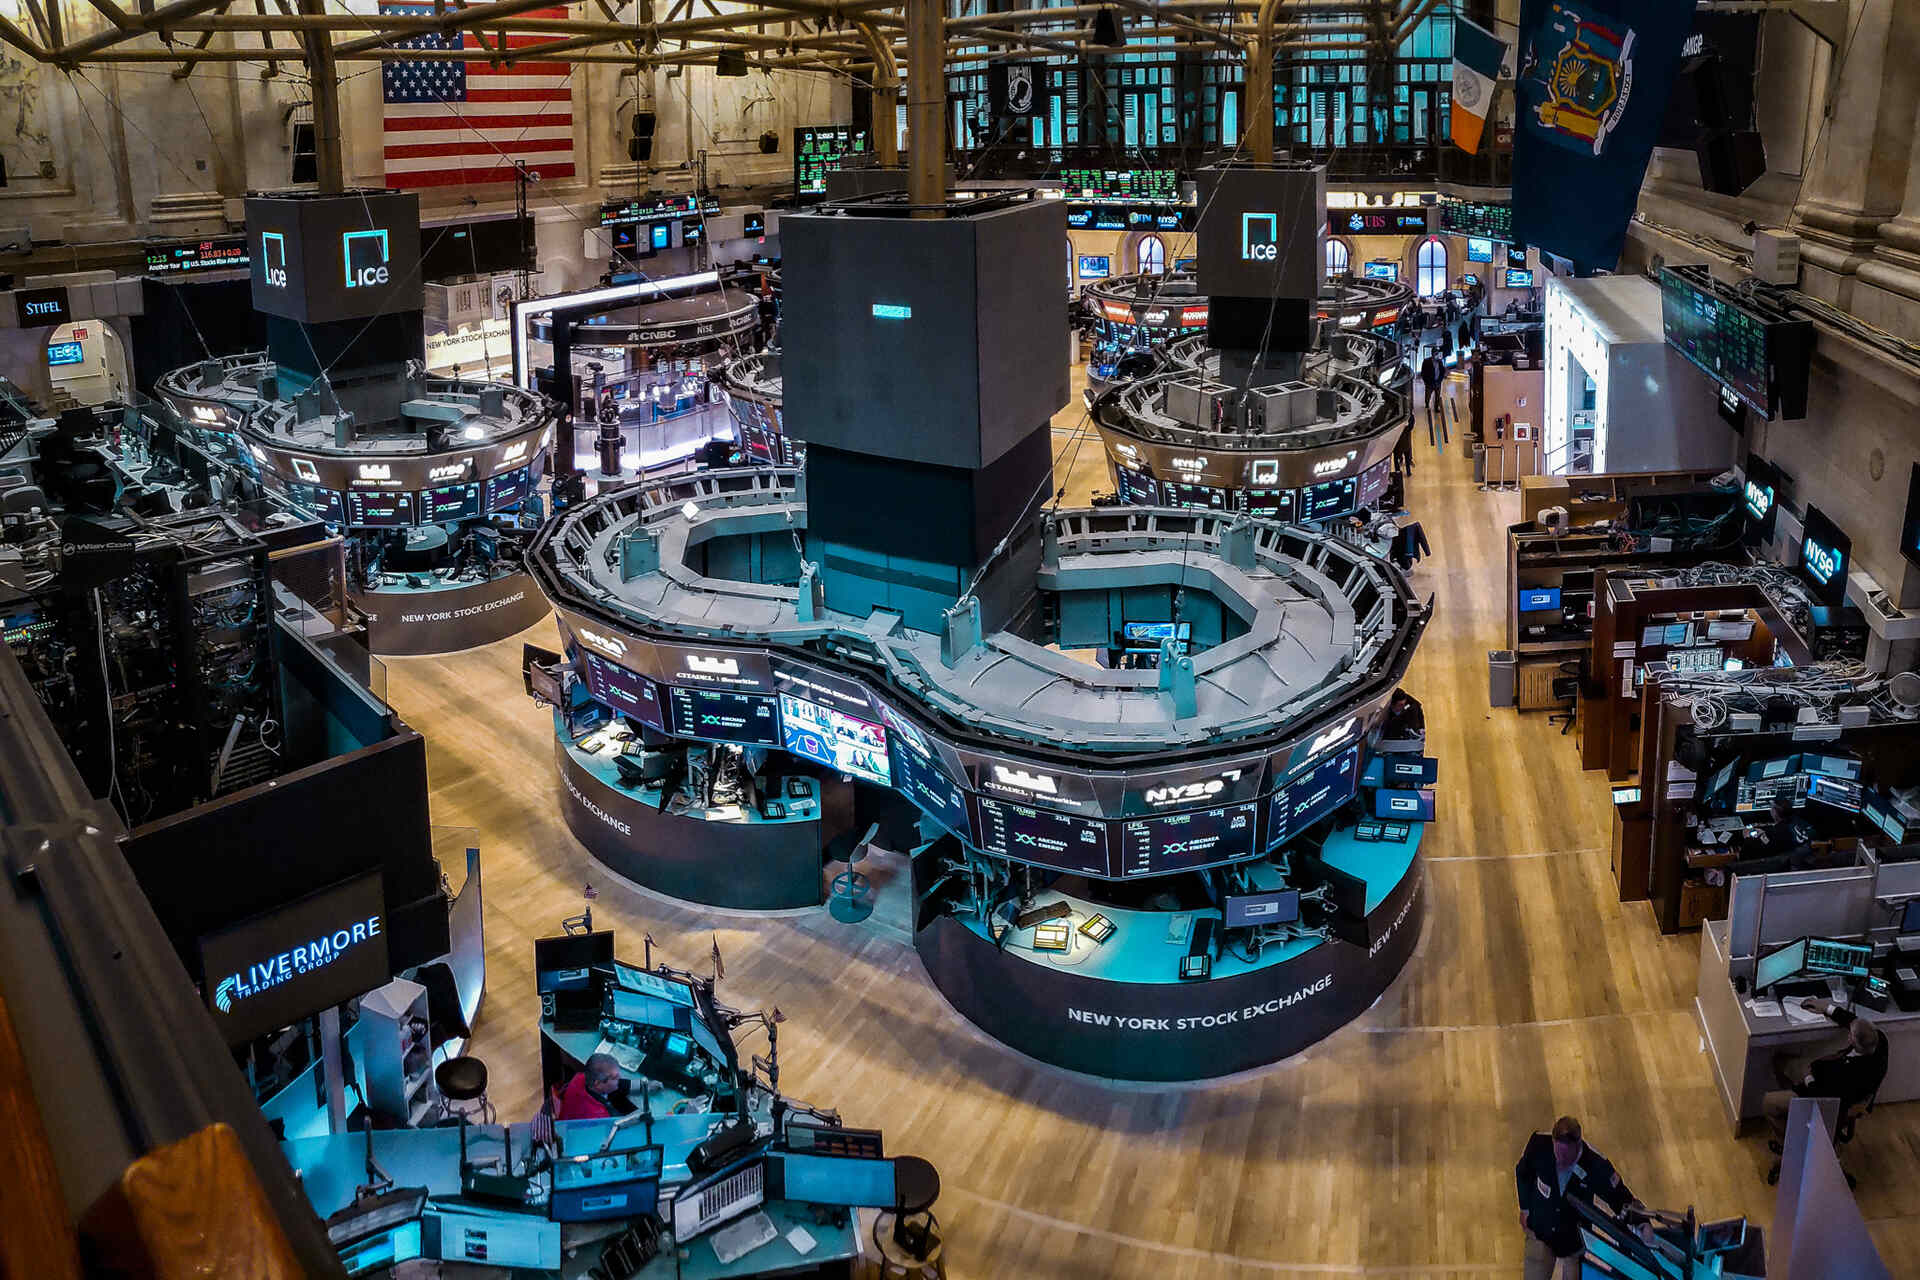 ETF. Նյու Յորքի ֆոնդային բորսայի առևտրային հարկը (Նյու Յորքի ֆոնդային բորսա կամ NYSE հապավումը), որը հիմնված է հայտնի Ուոլ Սթրիթի վրա և հիմնադրվել է դեռևս 1817 թ.